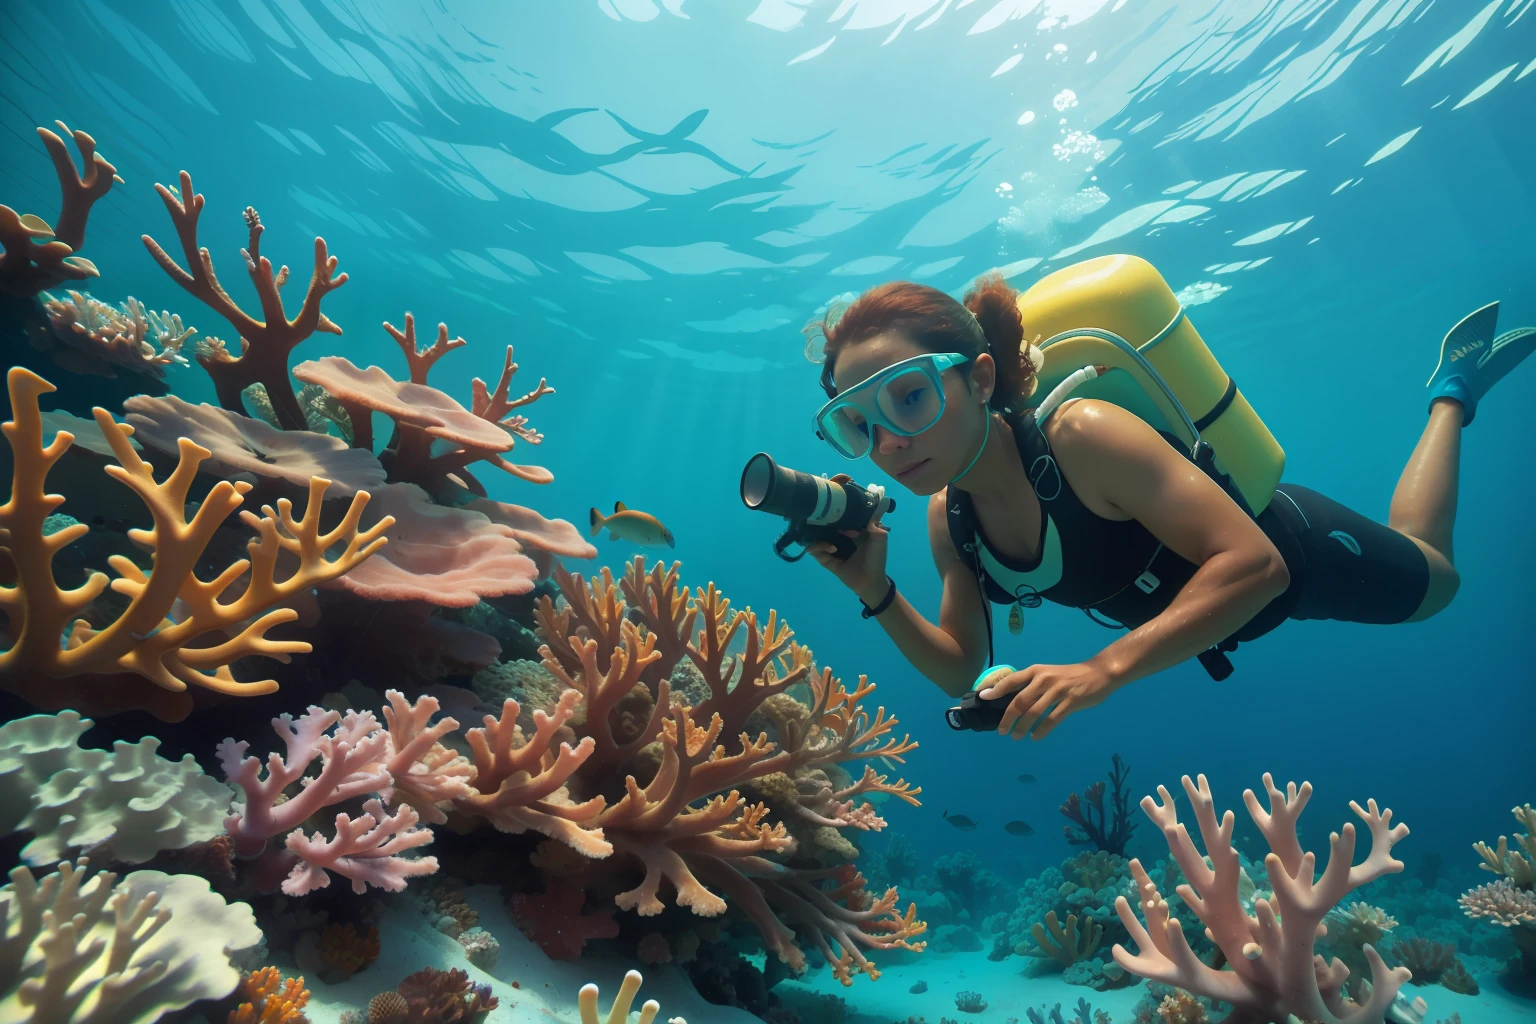 Datum: 2013 Land: Bahamas Beschreibung: Ein erwachsener bahamaischer Meeresbiologe untersucht sorgfältig lebendige Korallenriffe unter Wasser, ein Element der Umweltverträglichkeit für die Atmosphäre hinzufügen.